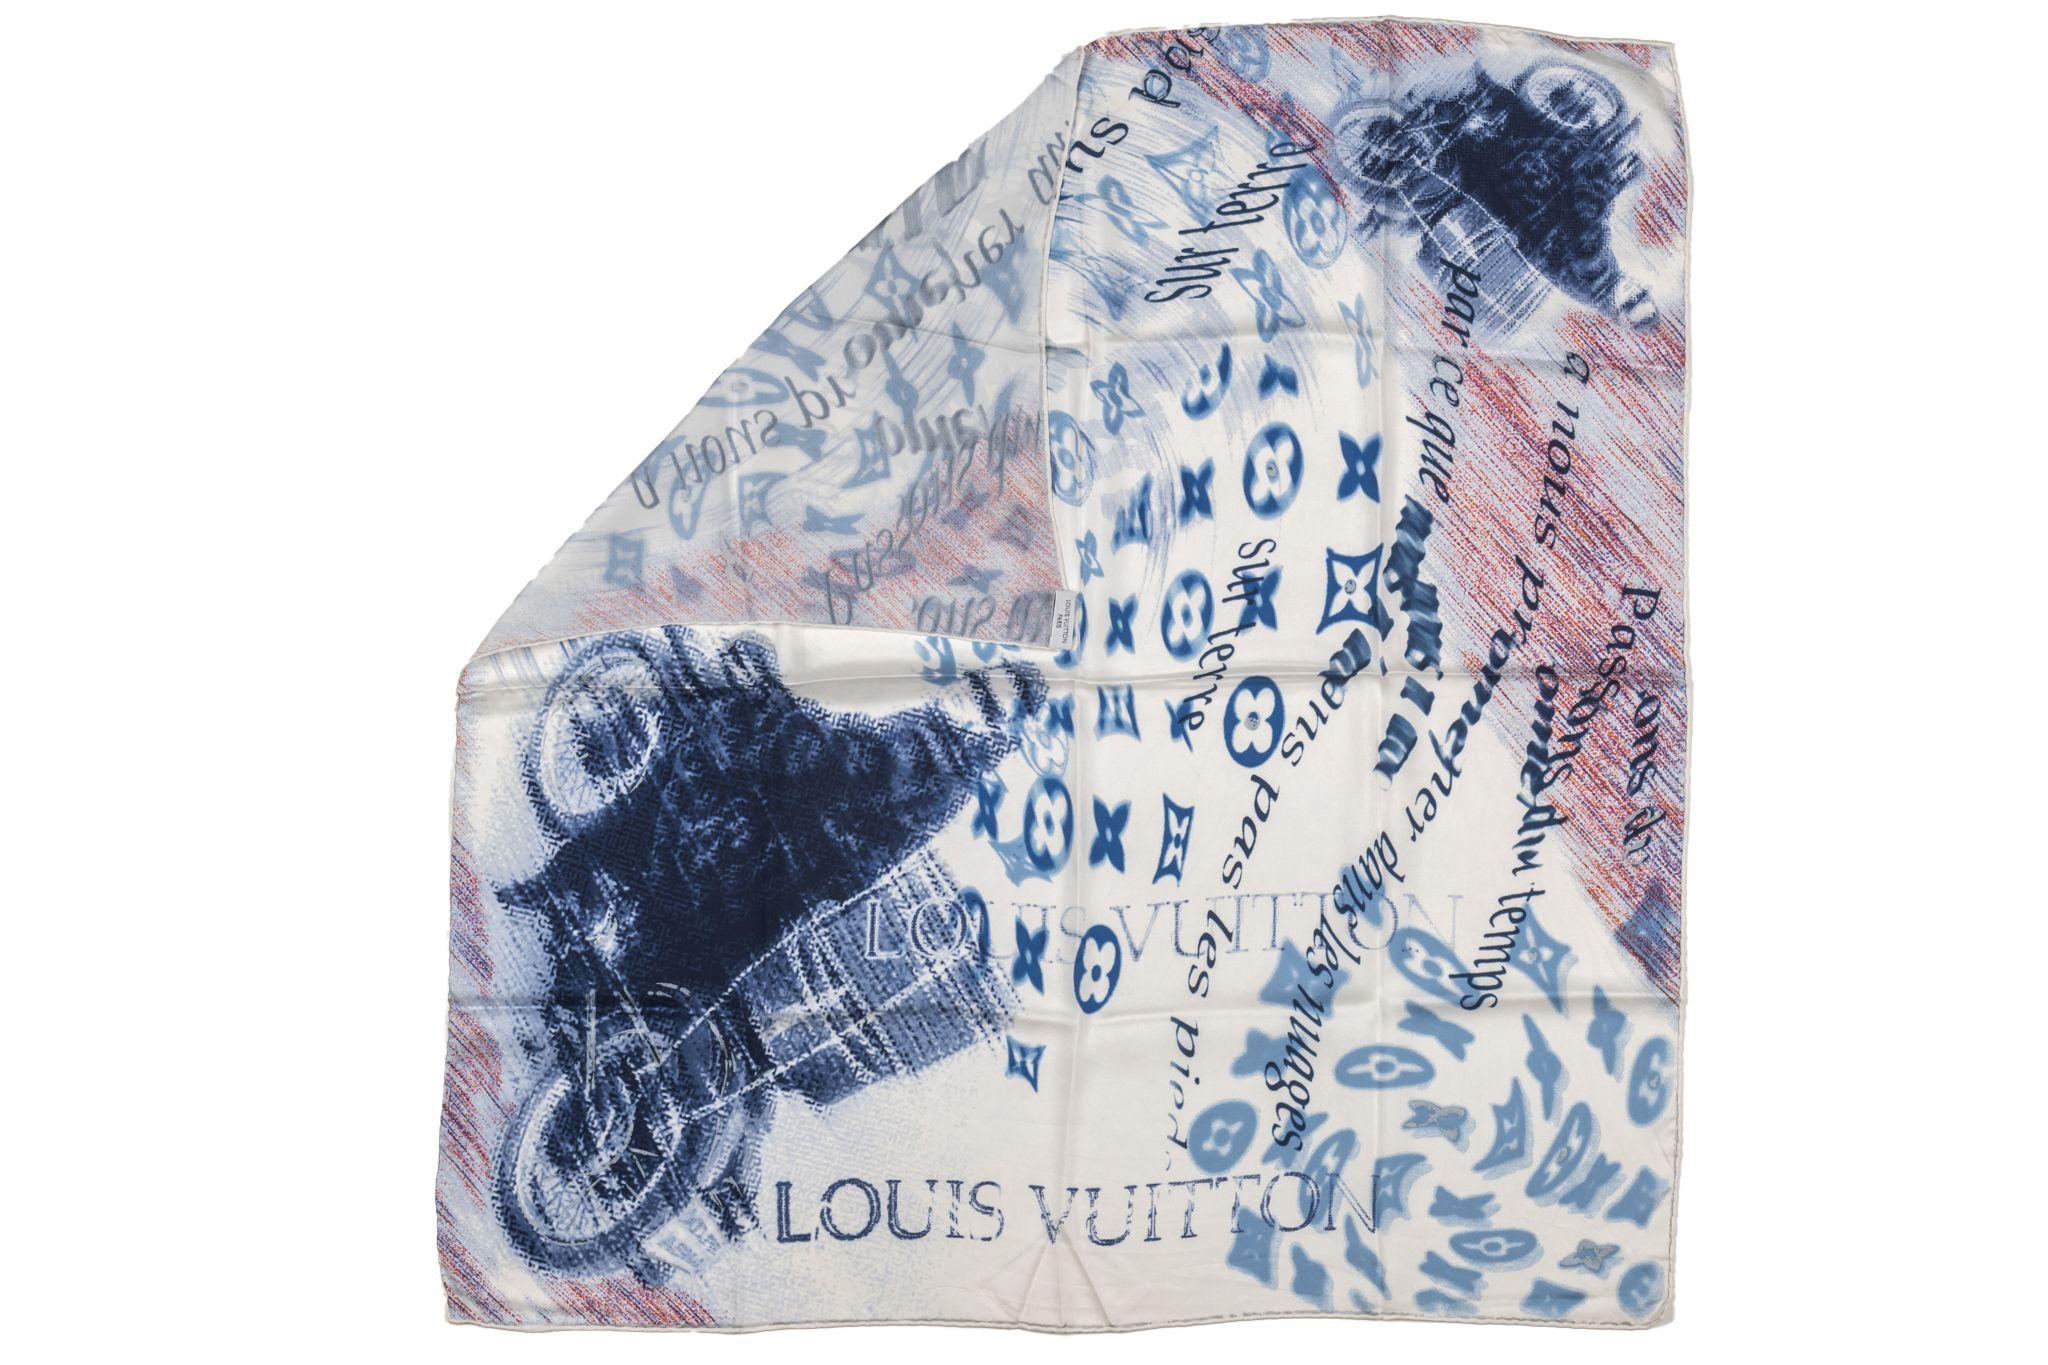 Louis Vuitton Motorrad-Schal aus Seide. Das Muster zeigt ein Graffiti eines Motorrads und die LV-Logos. Der Artikel ist in ausgezeichnetem Zustand.